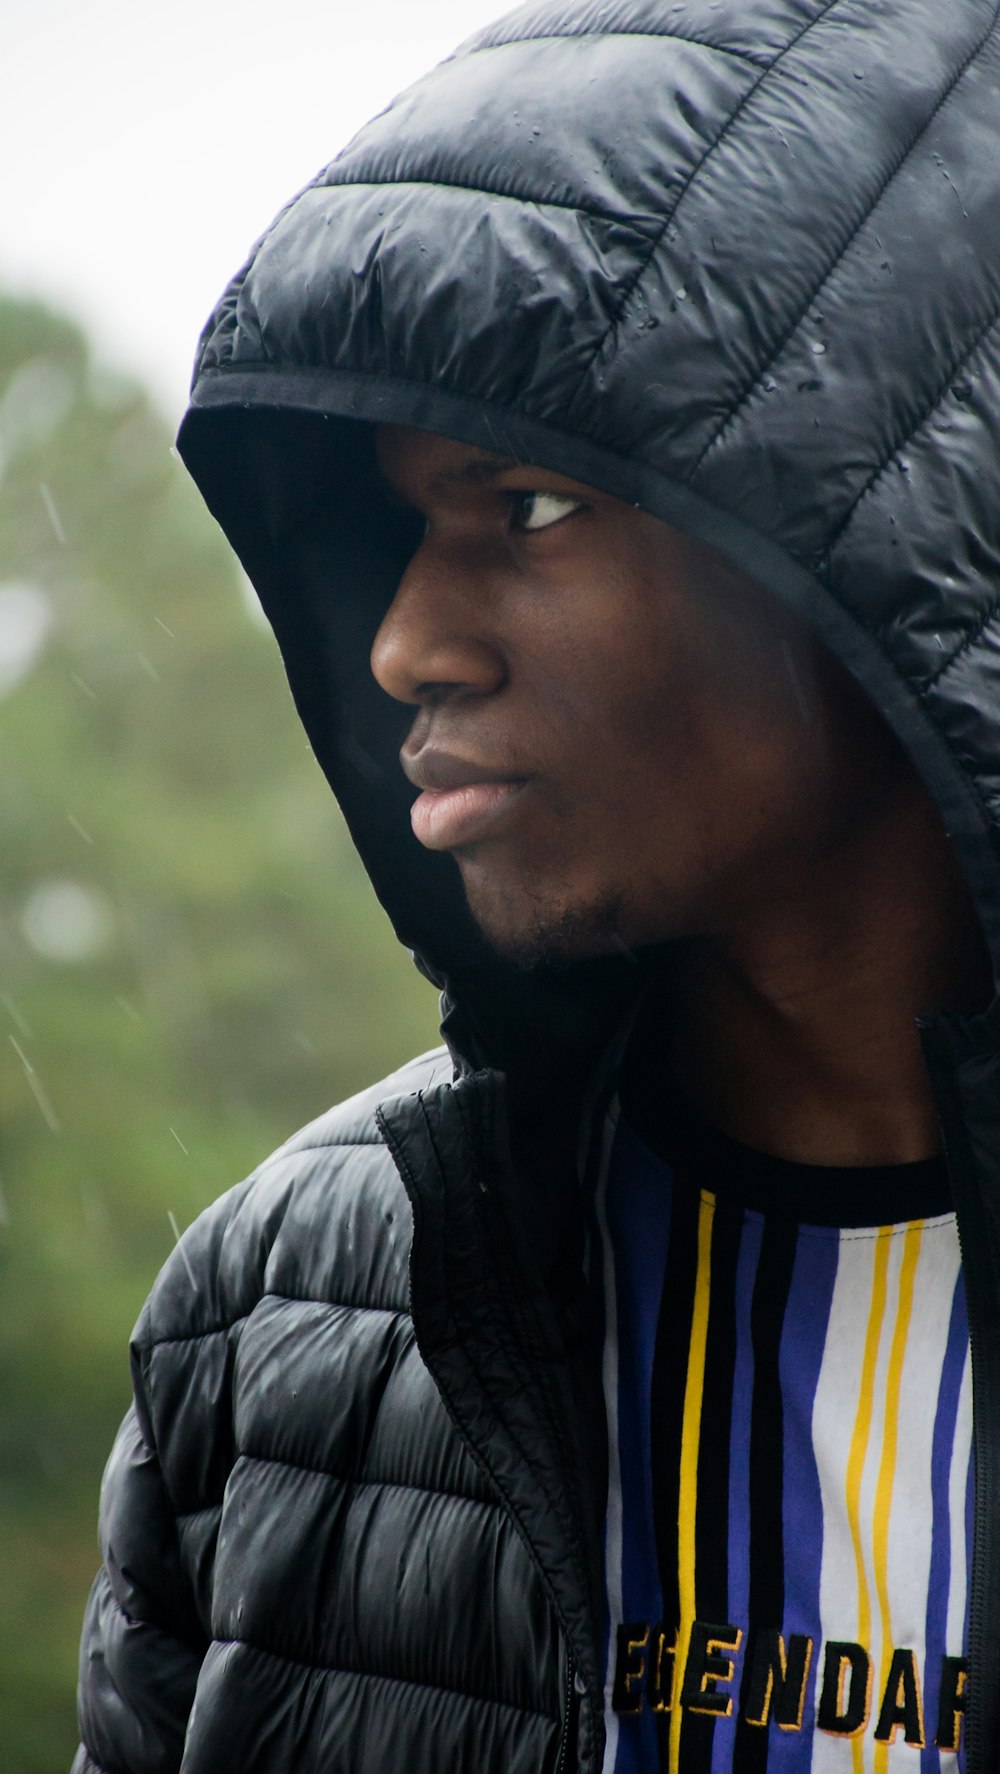 Foto de hombre con chaqueta negra y camisa azul a rayas blancas y negras –  Imagen gratuita Joven modelo masculino en Unsplash